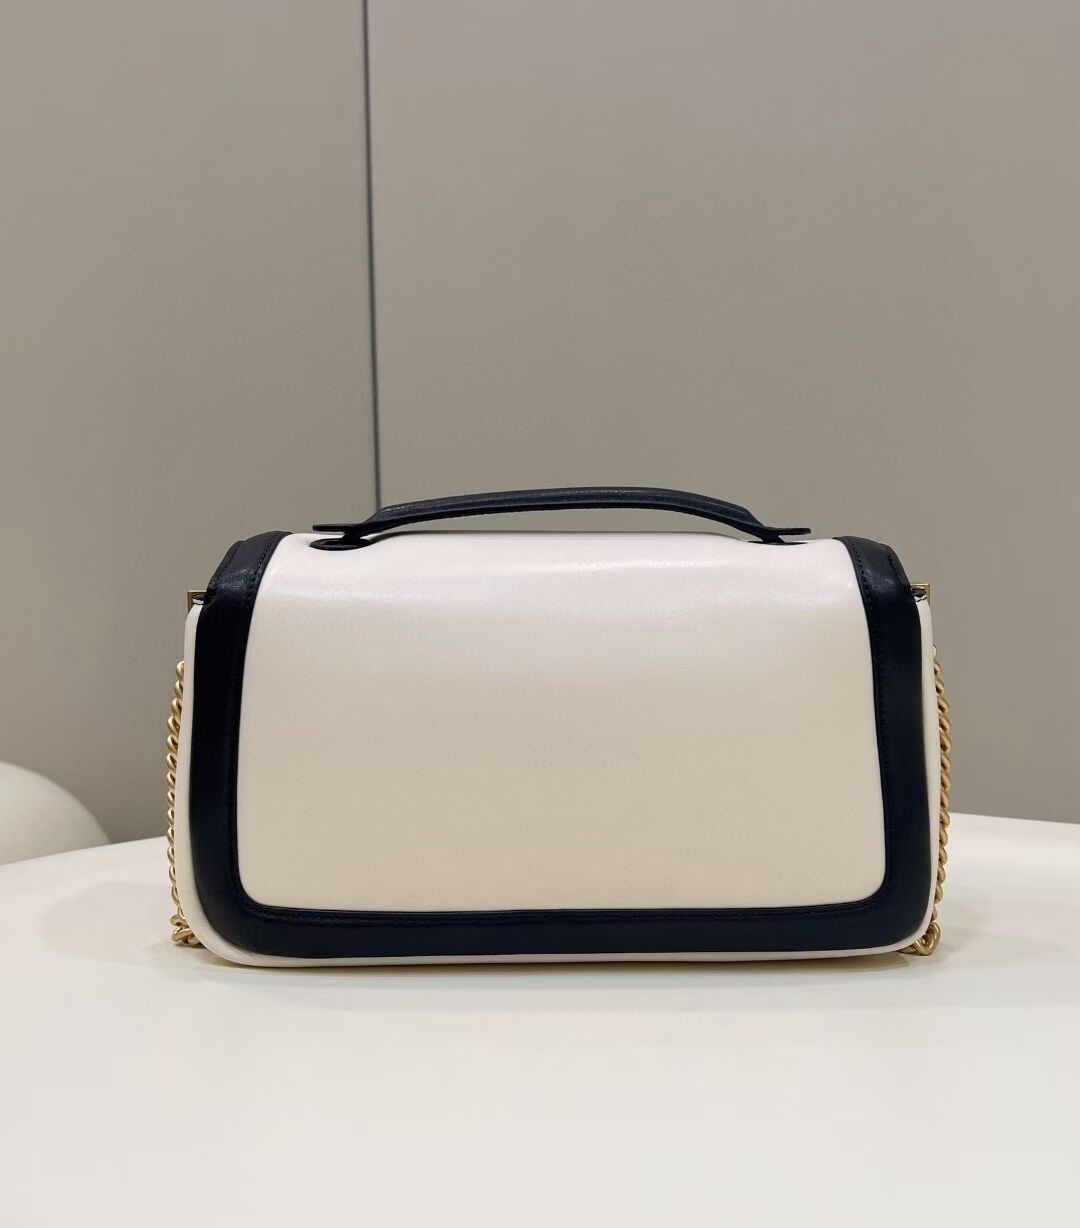 Fendi Baguette Sheepskin bag 8BR6550 Cream & black